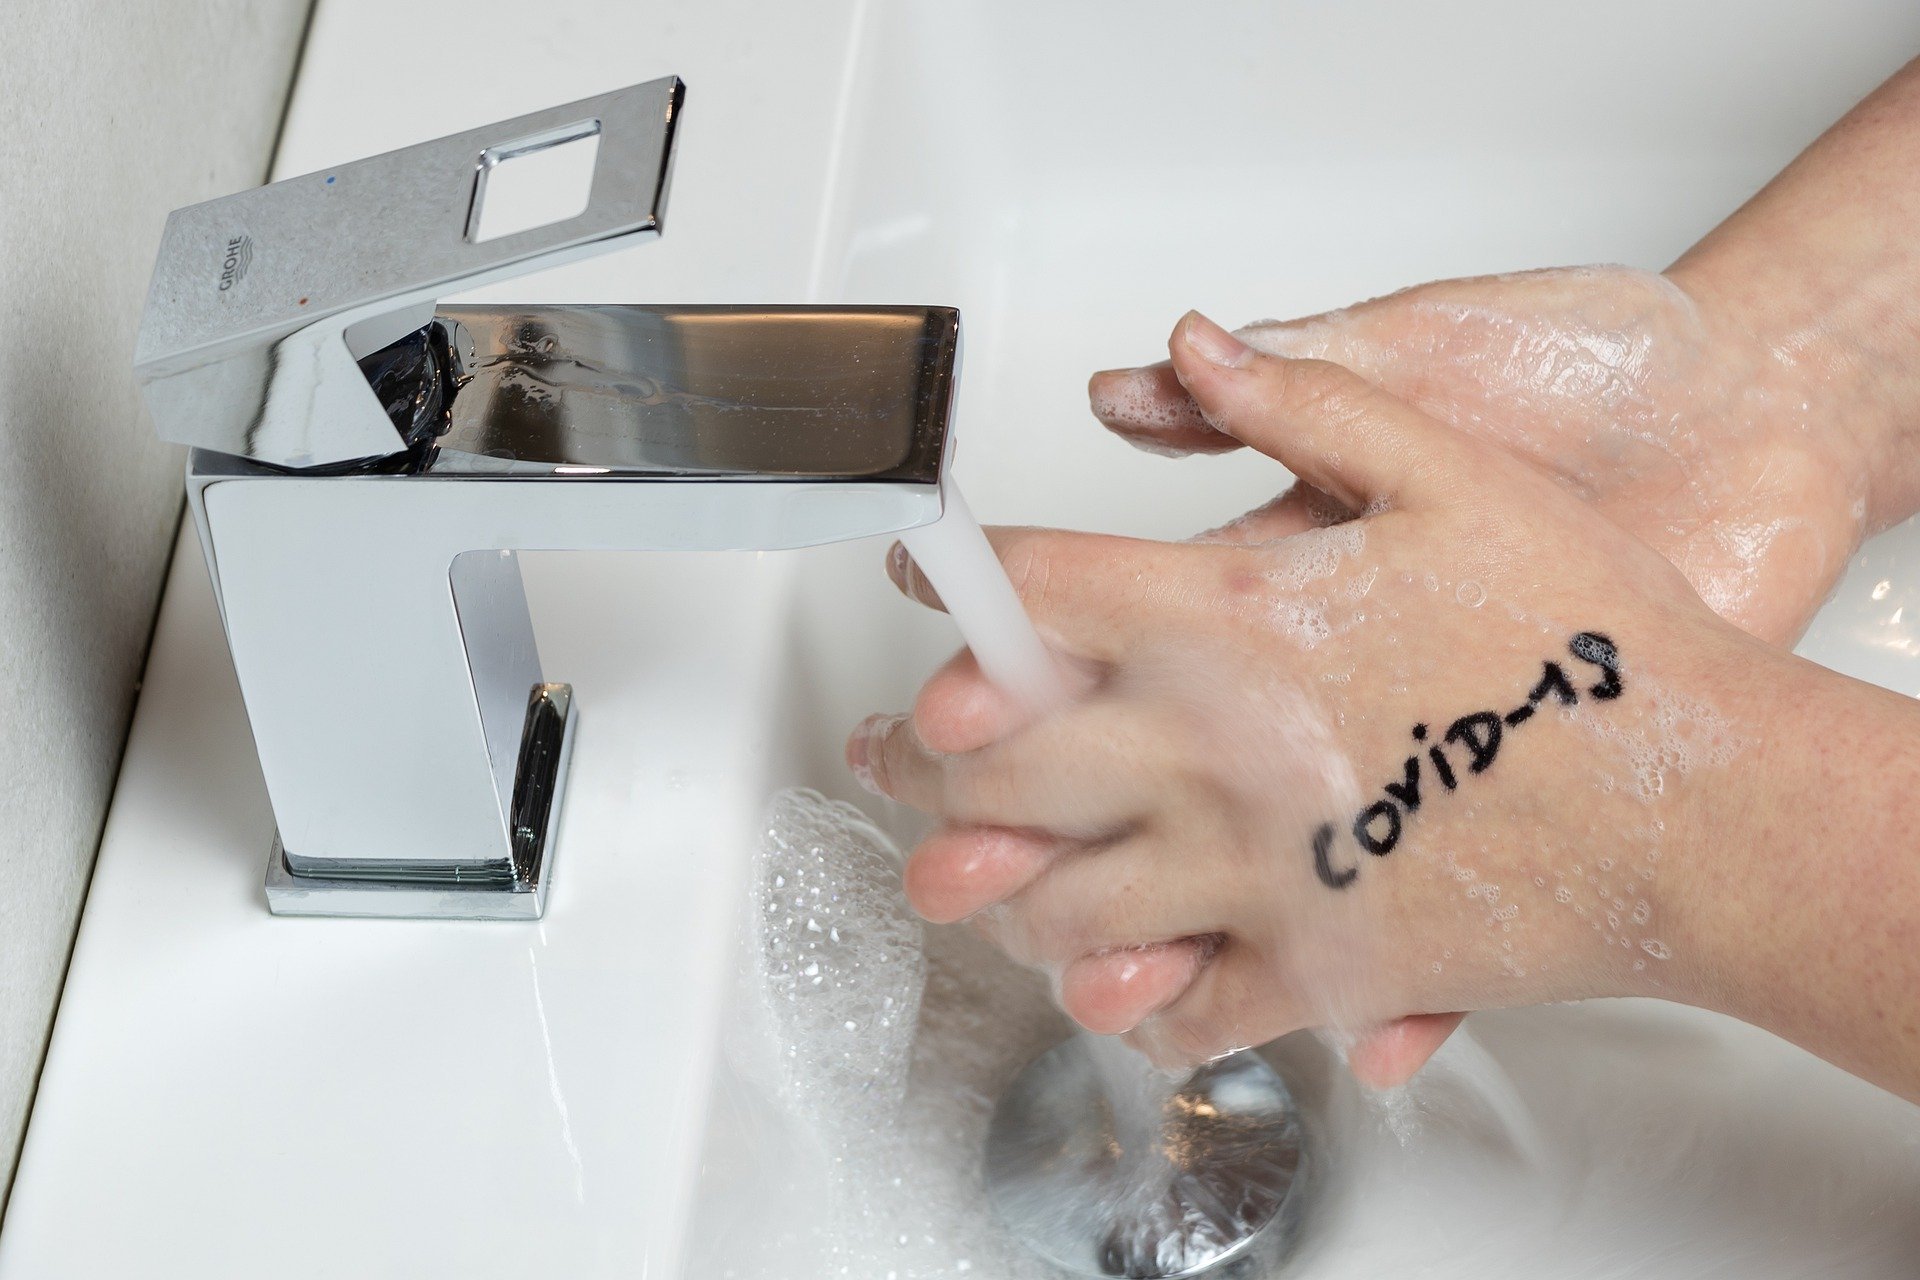 مخاطر غسل اليدين بصورة خاطئة